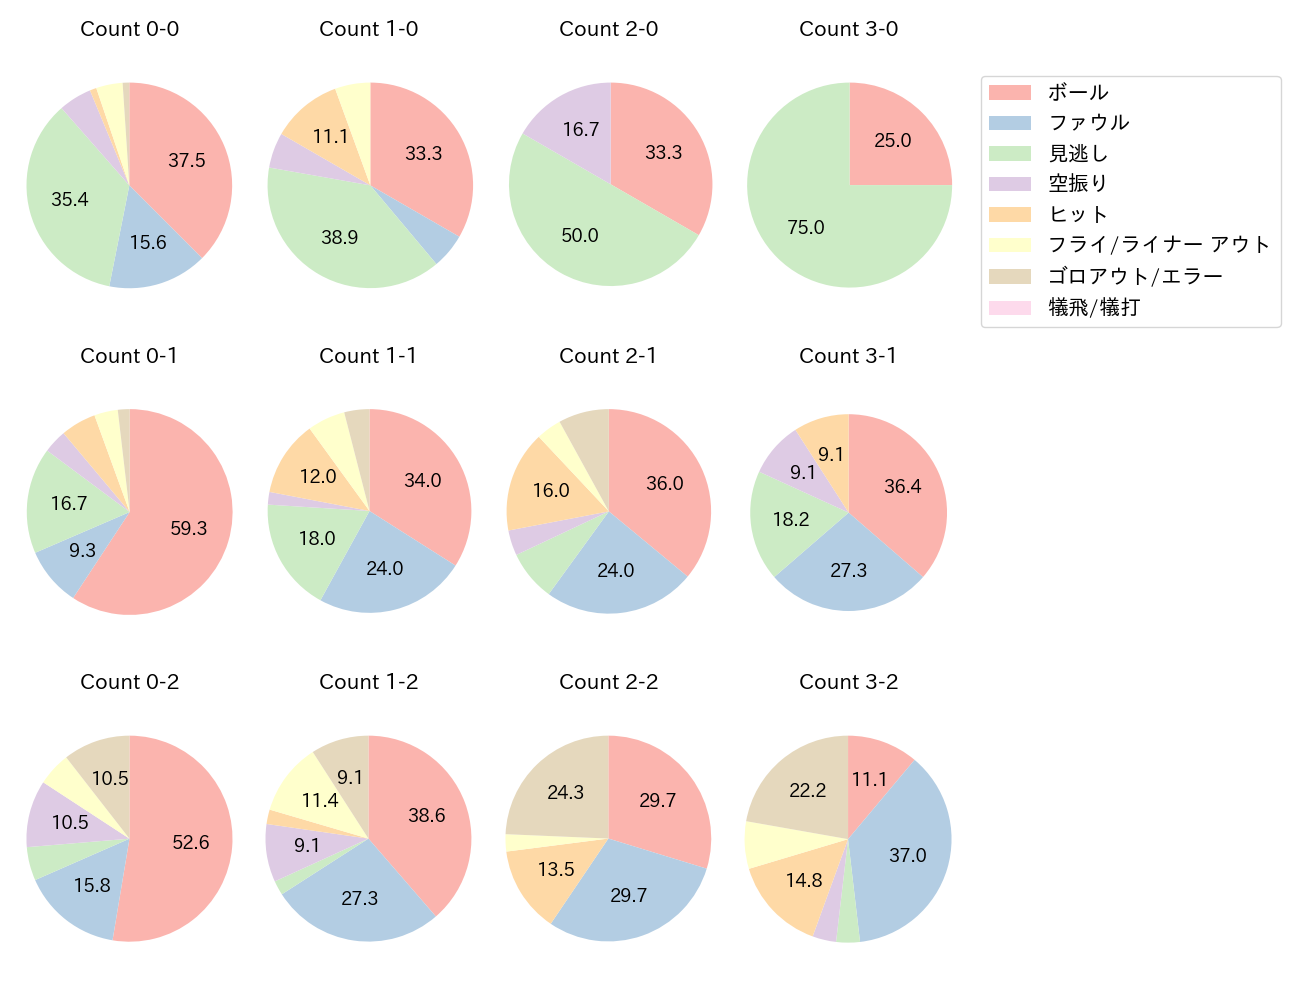 西川 龍馬の球数分布(2021年9月)